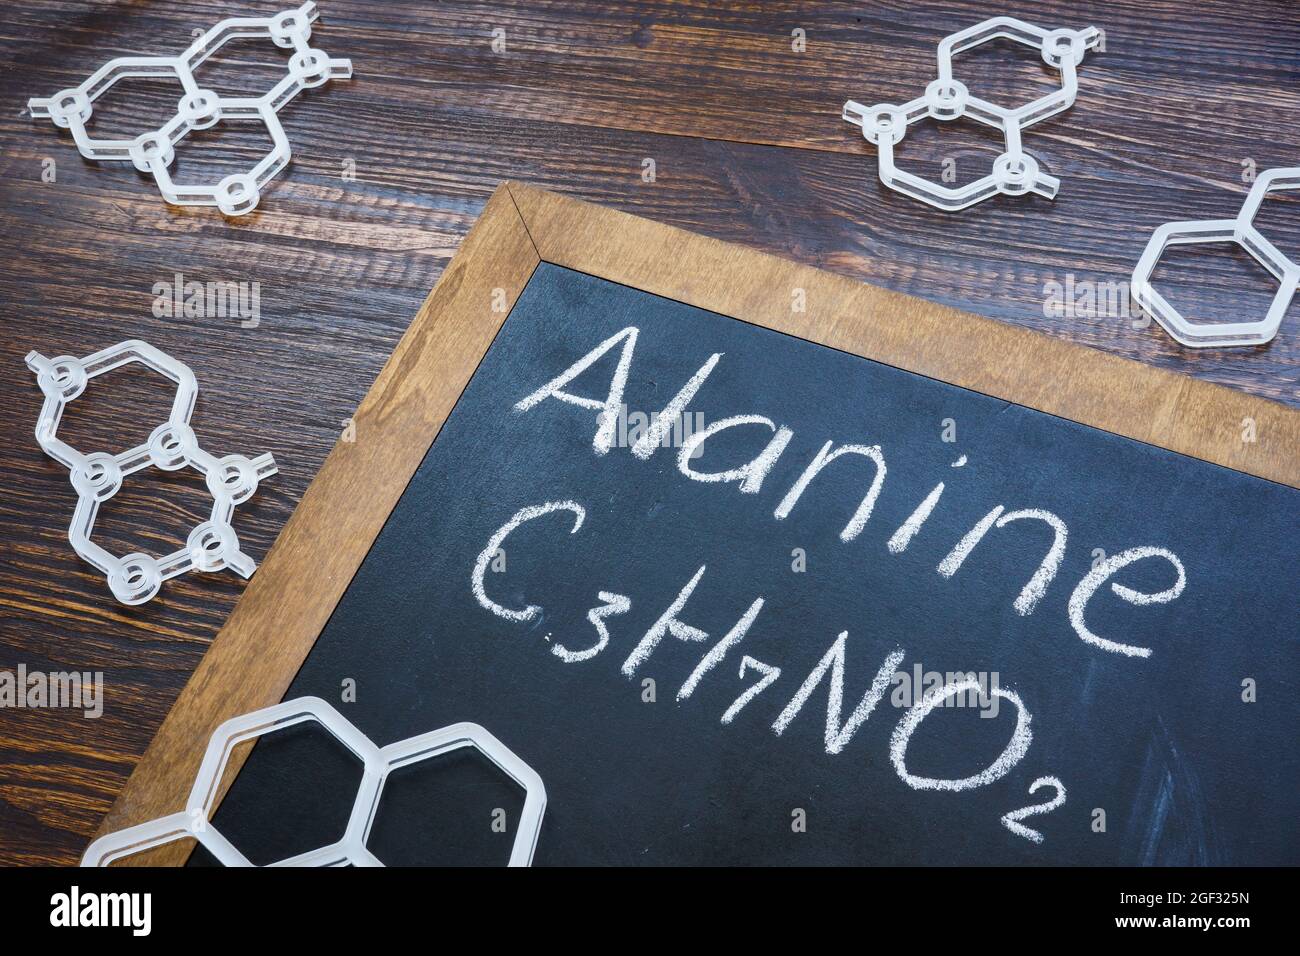 Alanin und chemische Formel mit Plastikmodellen. Stockfoto